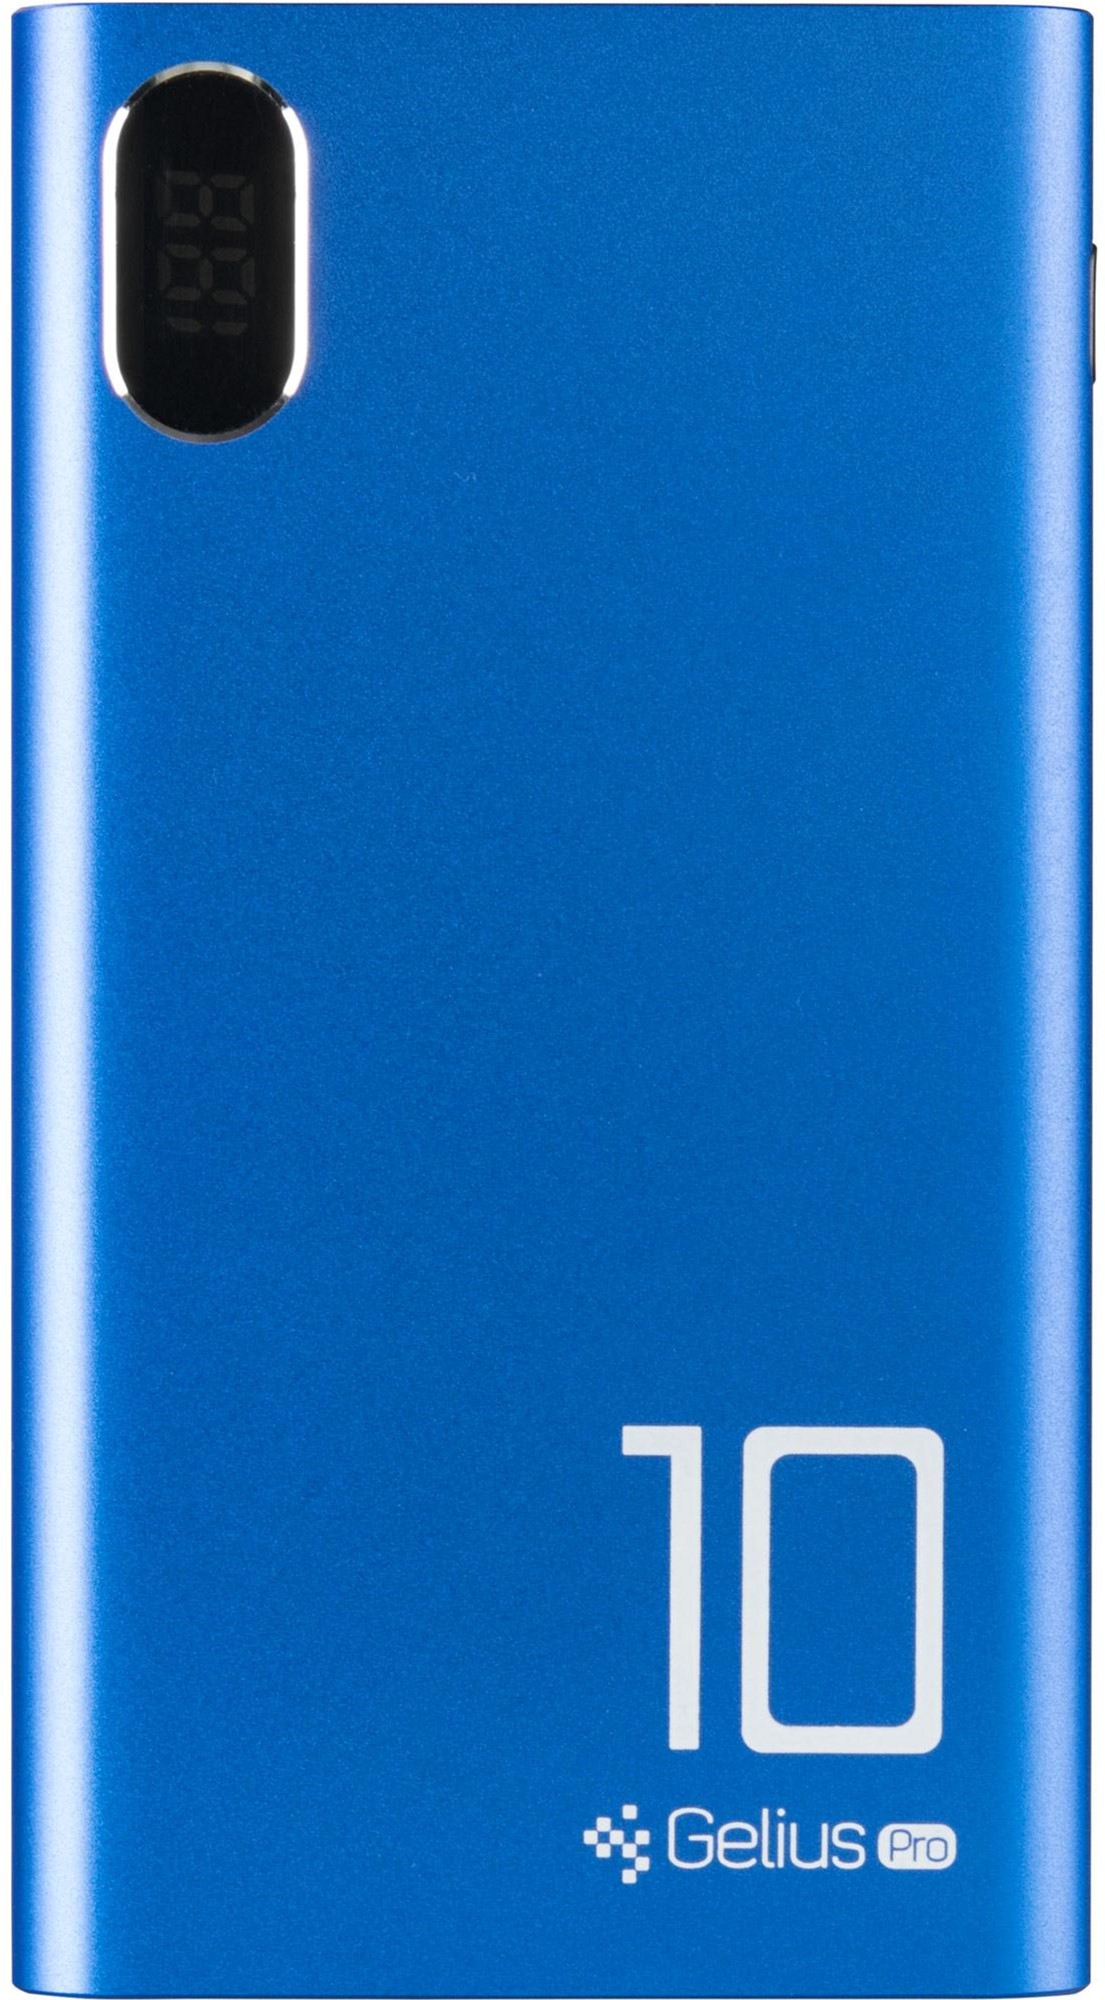 Универсальная мобильная батарея GELIUS Pro CoolMini GP-PB10-005 10000mAh Blue (72029) в Киеве